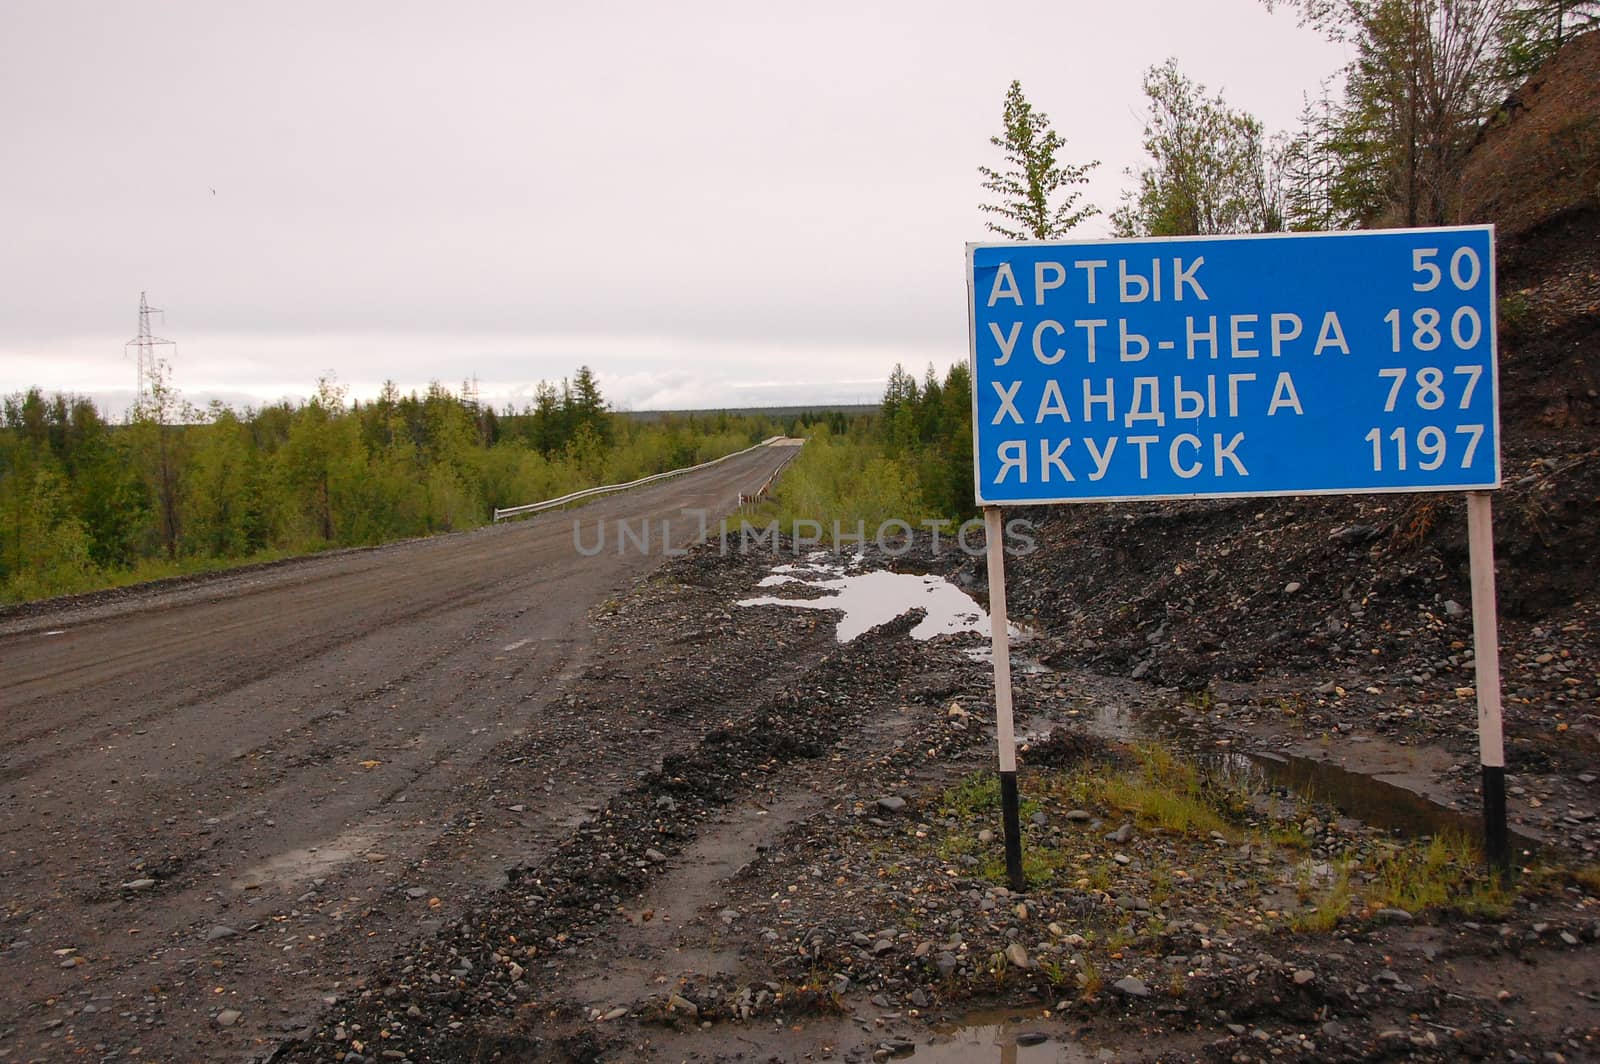 Road sign at gravel road Kolyma to Magadan highway Yakutia, outback Russia